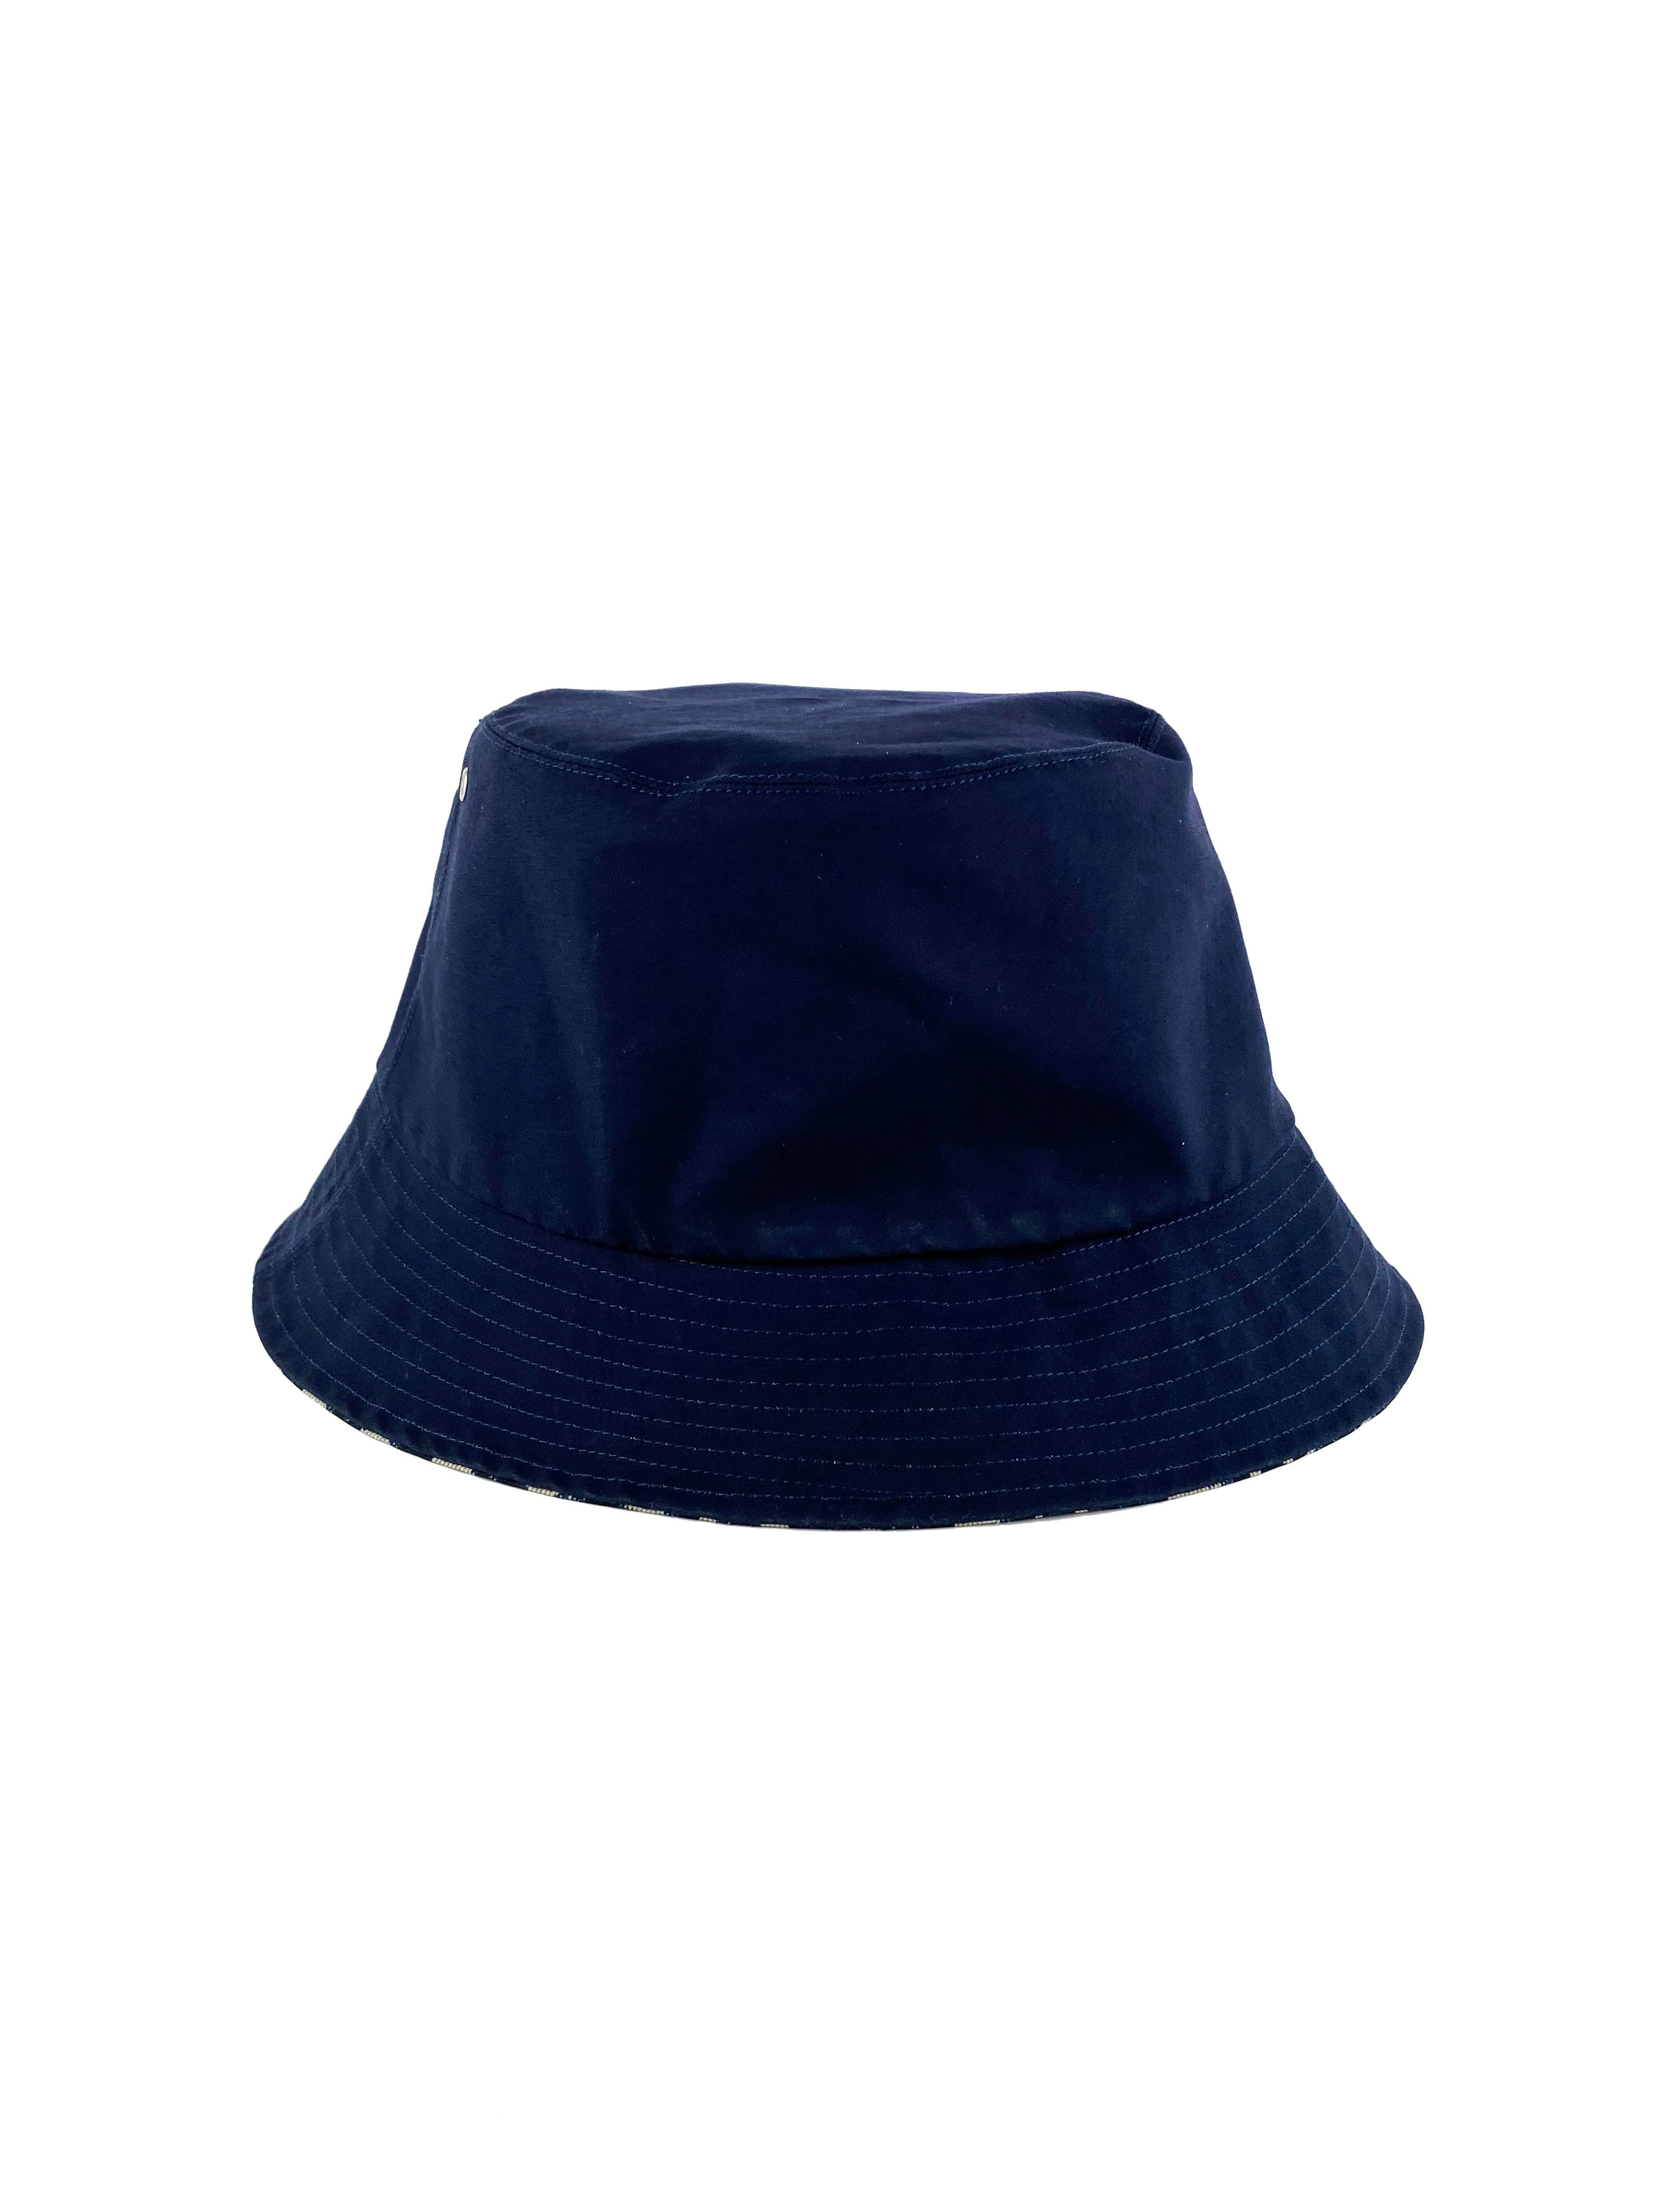 dior-oblique-bucket-hat-58-4.jpg